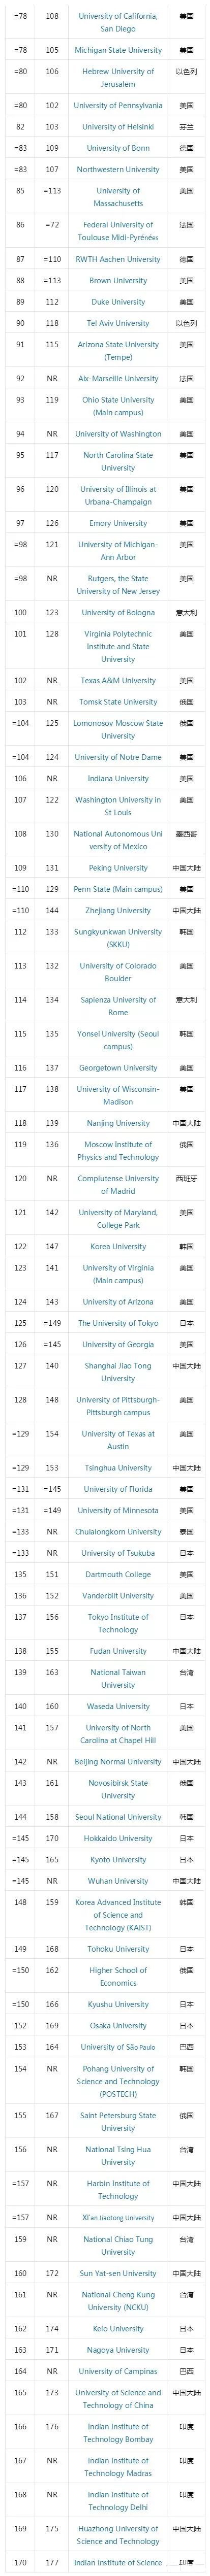 【学校排名】THE泰晤士发布2020年最具国际化大学排名